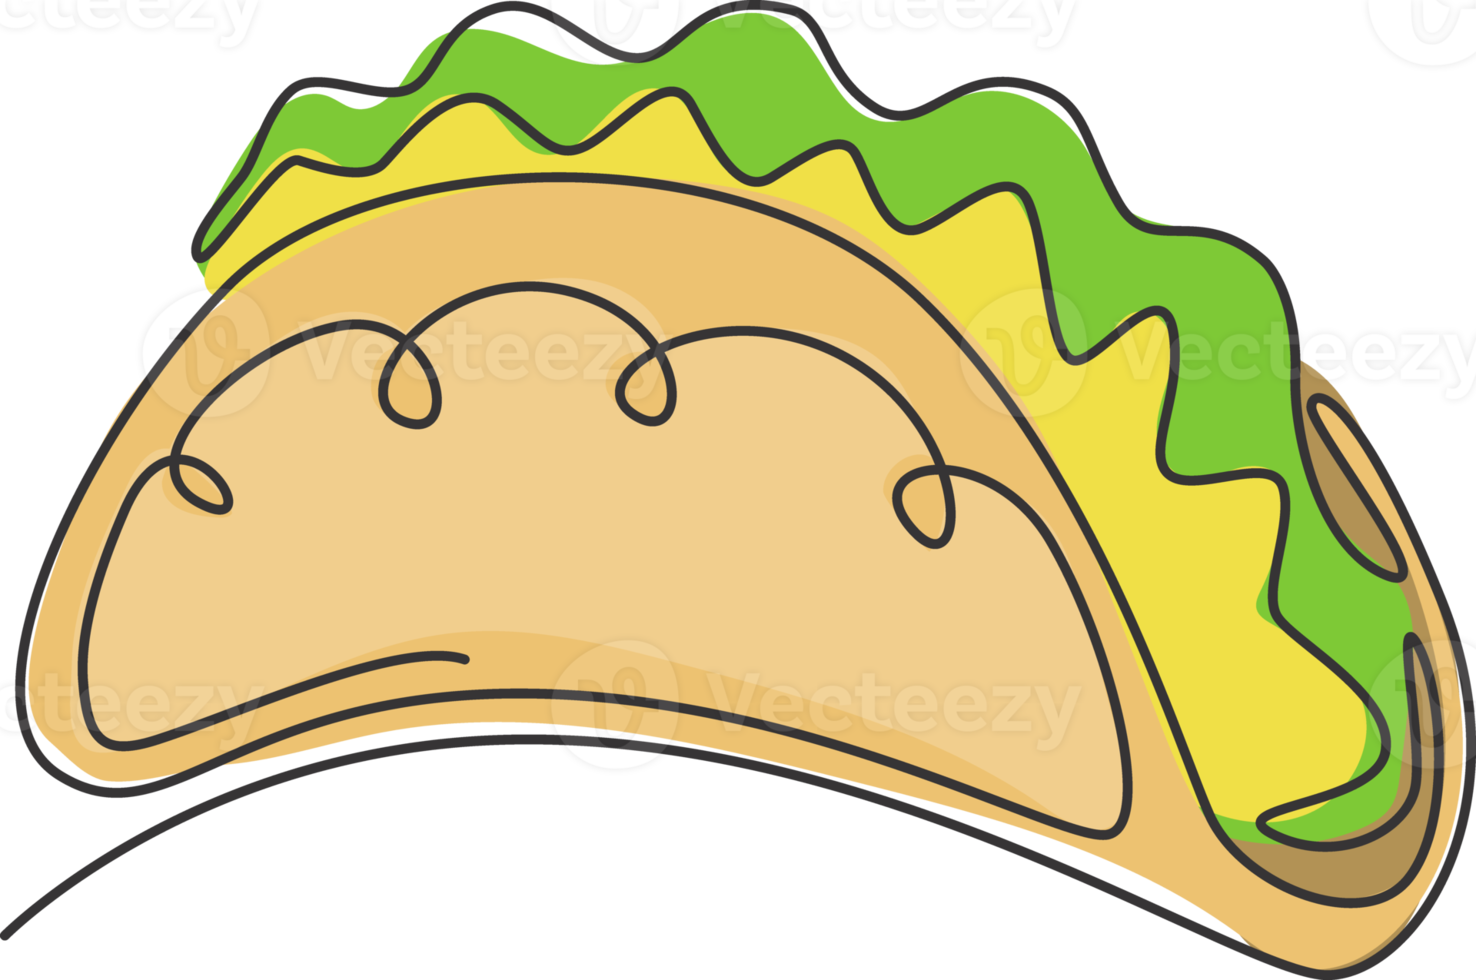 único desenho de linha contínua da etiqueta estilizada do logotipo dos tacos mexicanos. conceito de restaurante nacho de fast food de emblema. ilustração vetorial moderna de desenho de uma linha para café, loja ou serviço de entrega de comida png